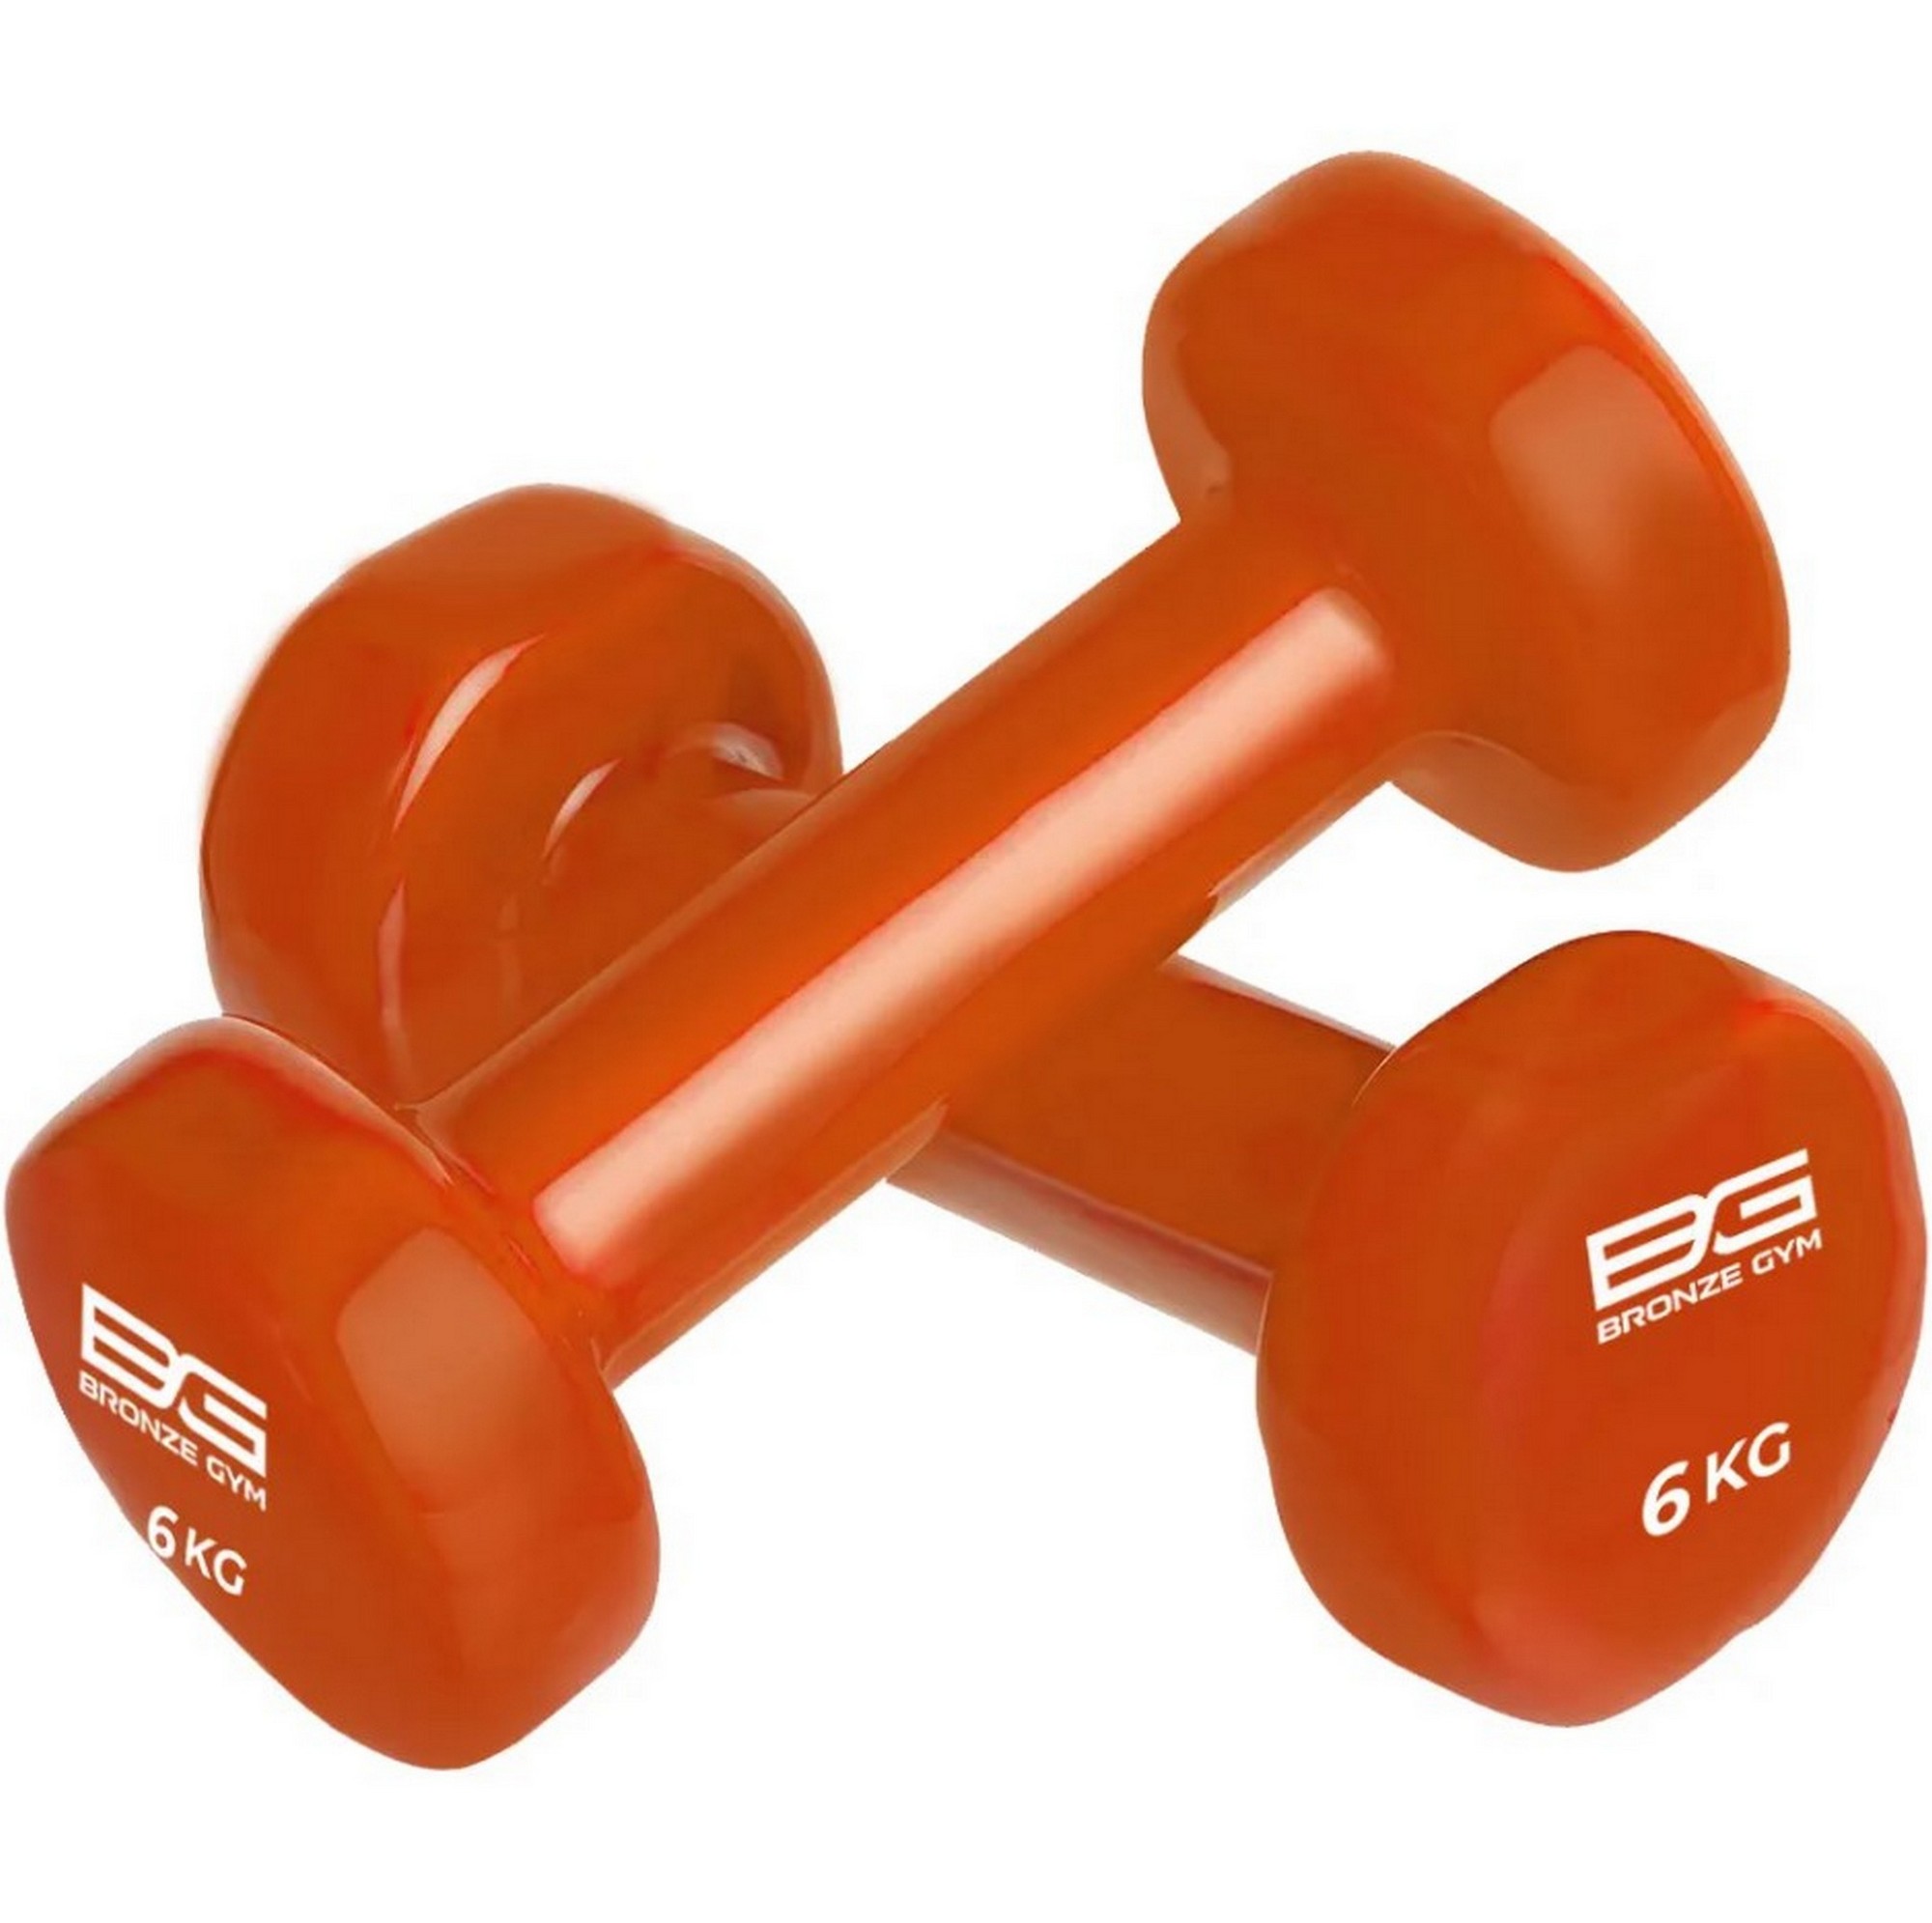     6,  Bronze Gym BG-FA-VD6 